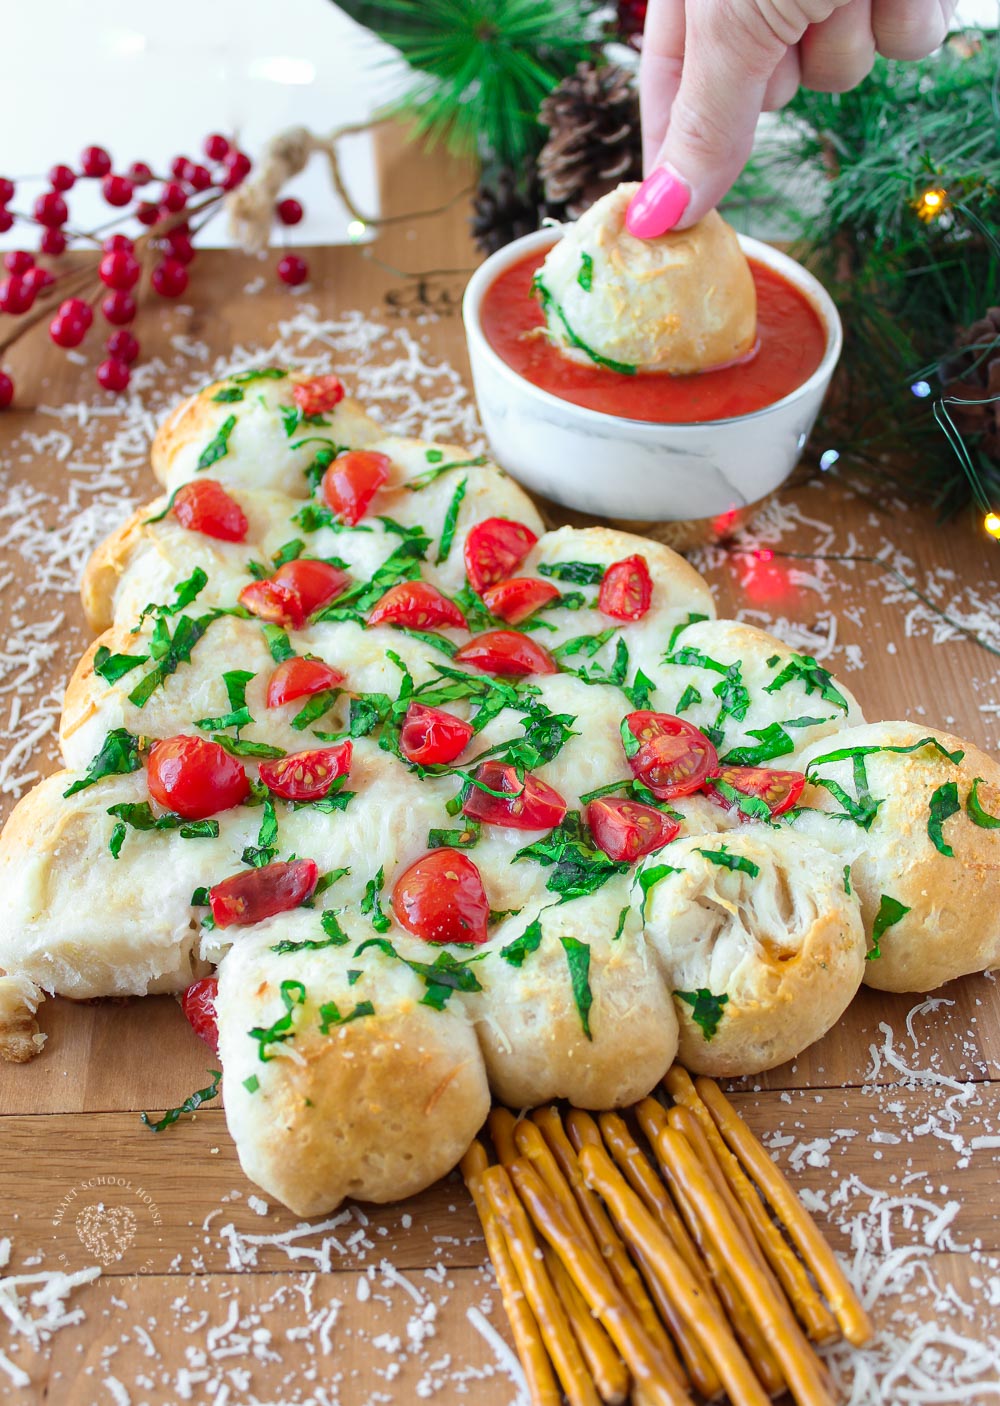 Este delicioso pan en forma de árbol de Navidad está cargado de queso cheddar, mozzarella y otros quesos para sorprender en cada bocado cálido, mantecoso y con ajo.